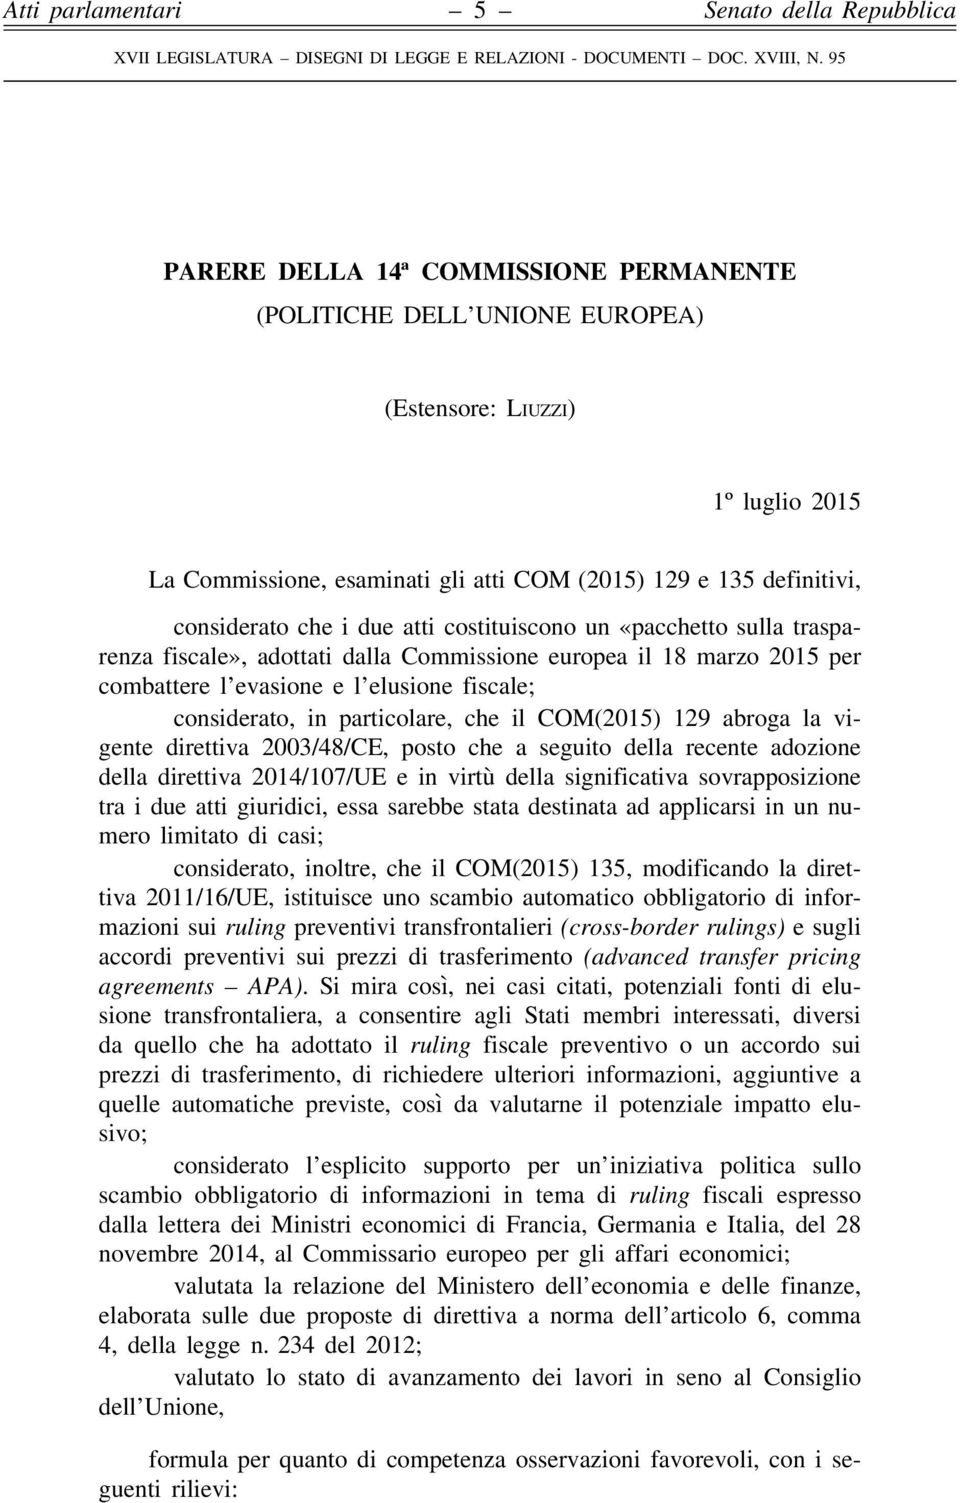 COM(2015) 129 abroga la vigente direttiva 2003/48/CE, posto che a seguito della recente adozione della direttiva 2014/107/UE e in virtù della significativa sovrapposizione tra i due atti giuridici,